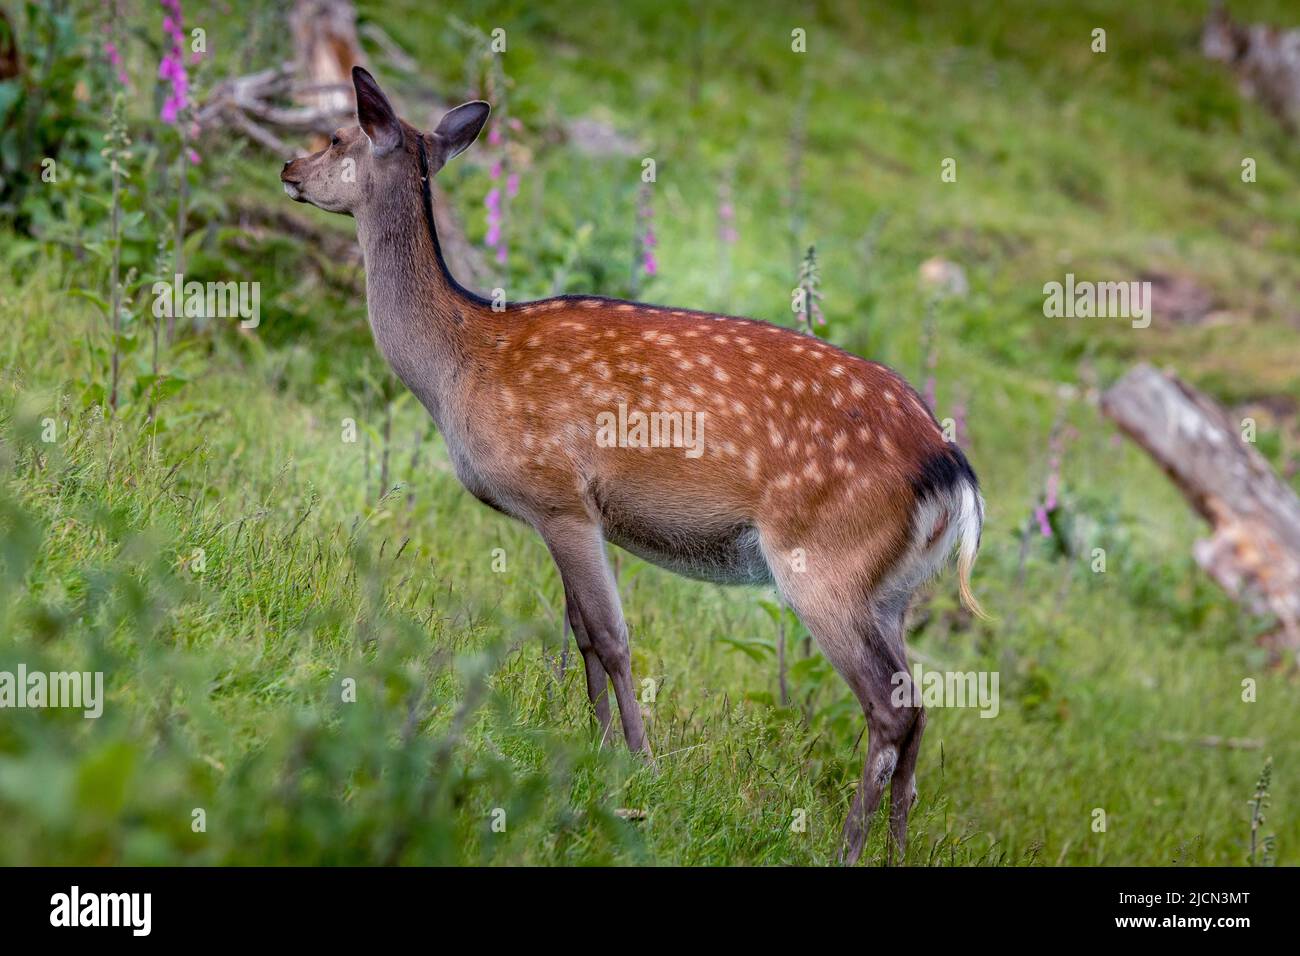 Ce cerf en jachère broutage sur un pré vert. Sa fourrure brun rougeâtre est un beau contraste avec l'herbe verte luxuriante. Il porte son manteau d'été à pois Banque D'Images